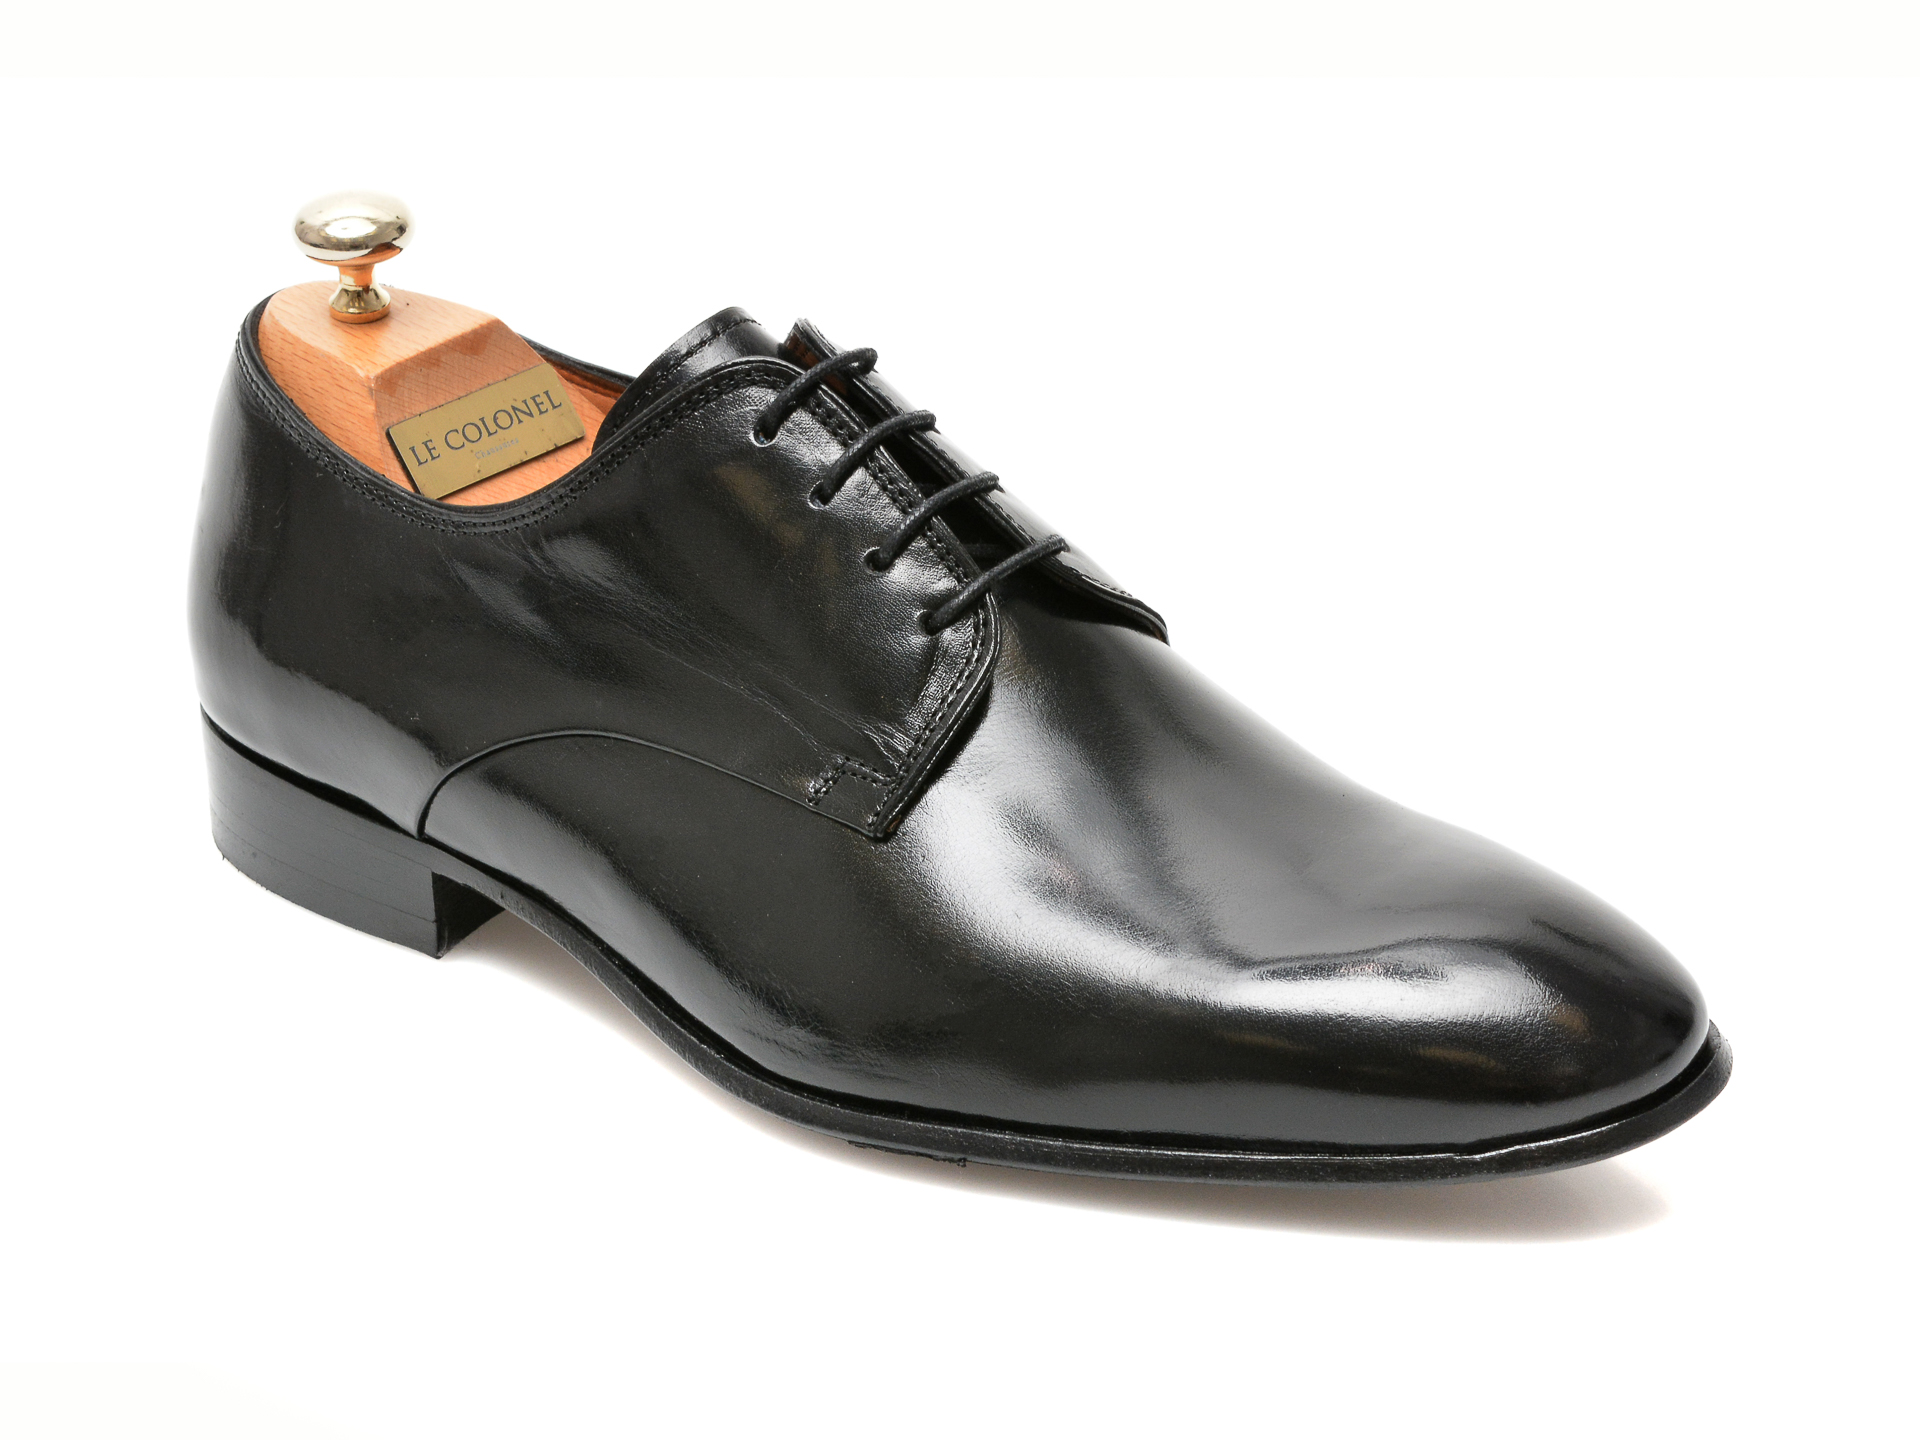 Pantofi LE COLONEL negri, 49817, din piele naturala Le Colonel Le Colonel